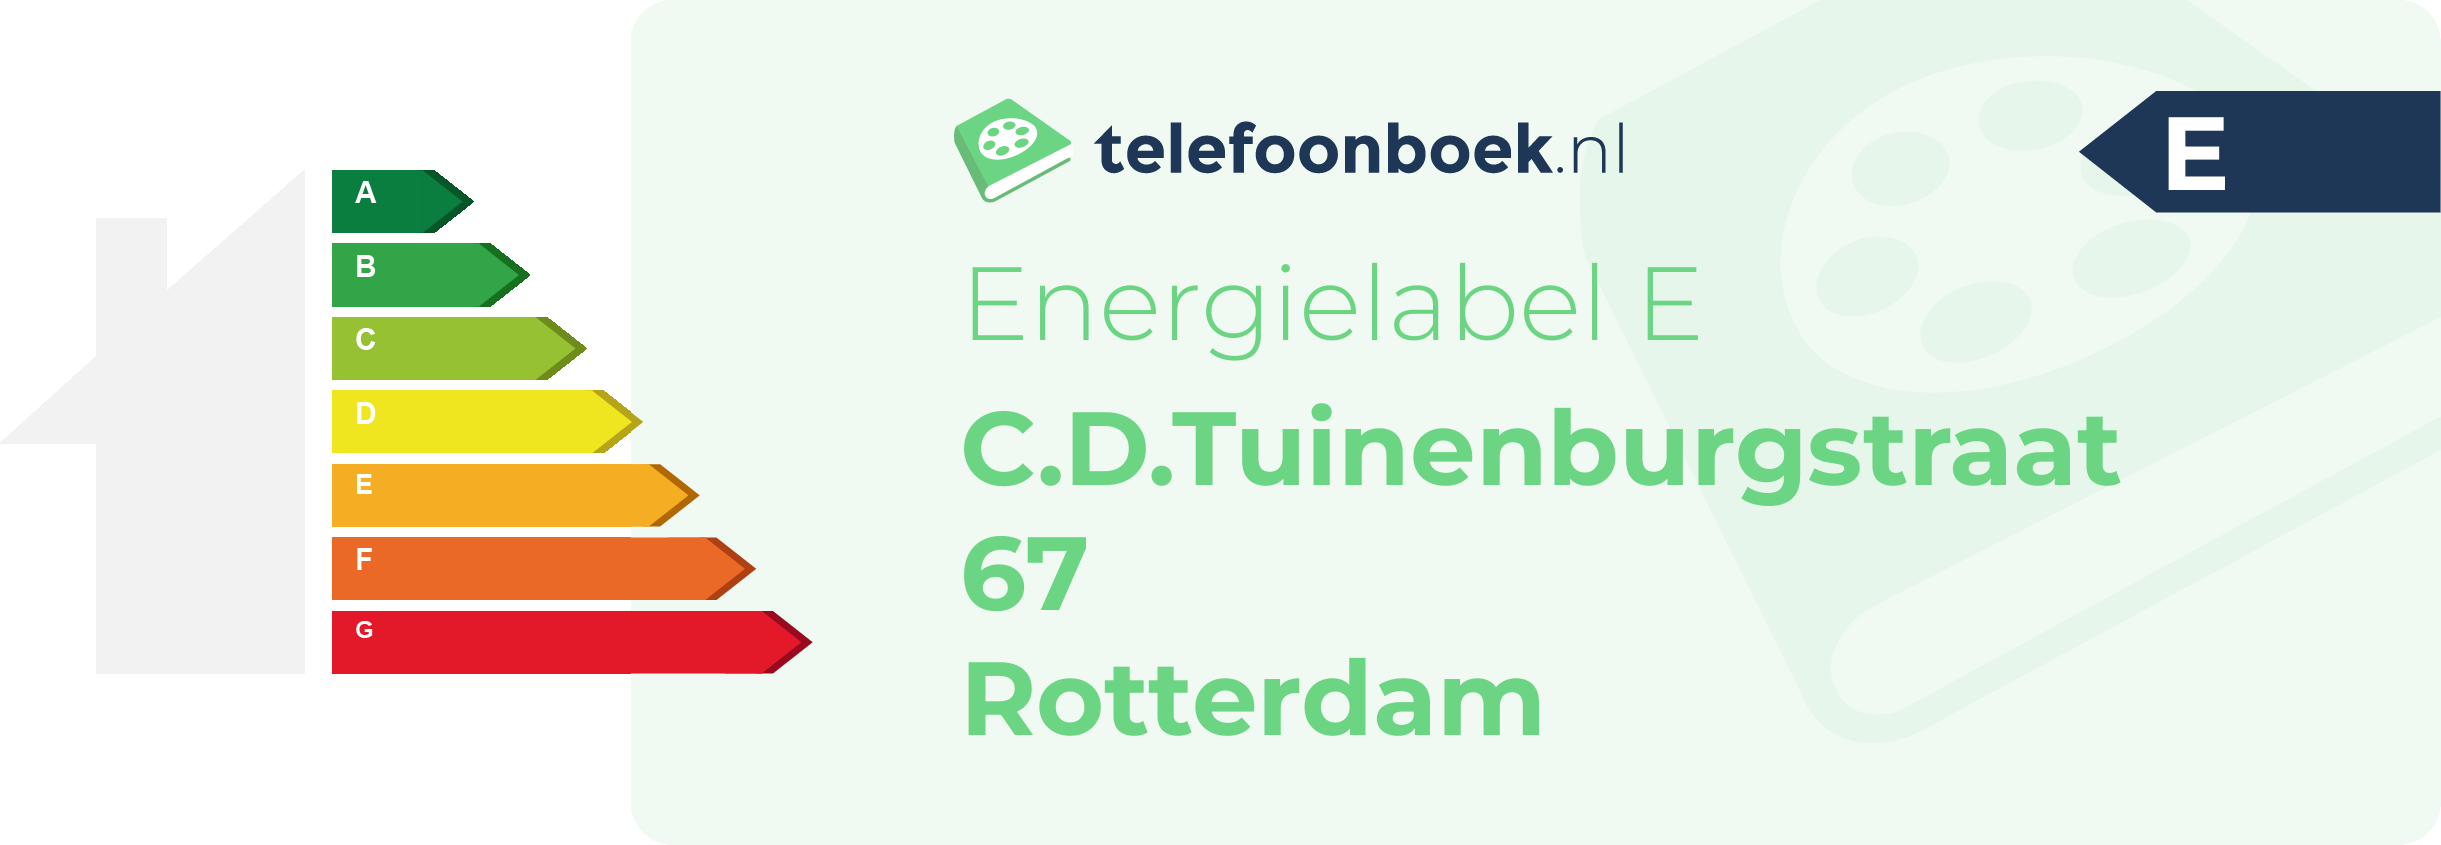 Energielabel C.D.Tuinenburgstraat 67 Rotterdam